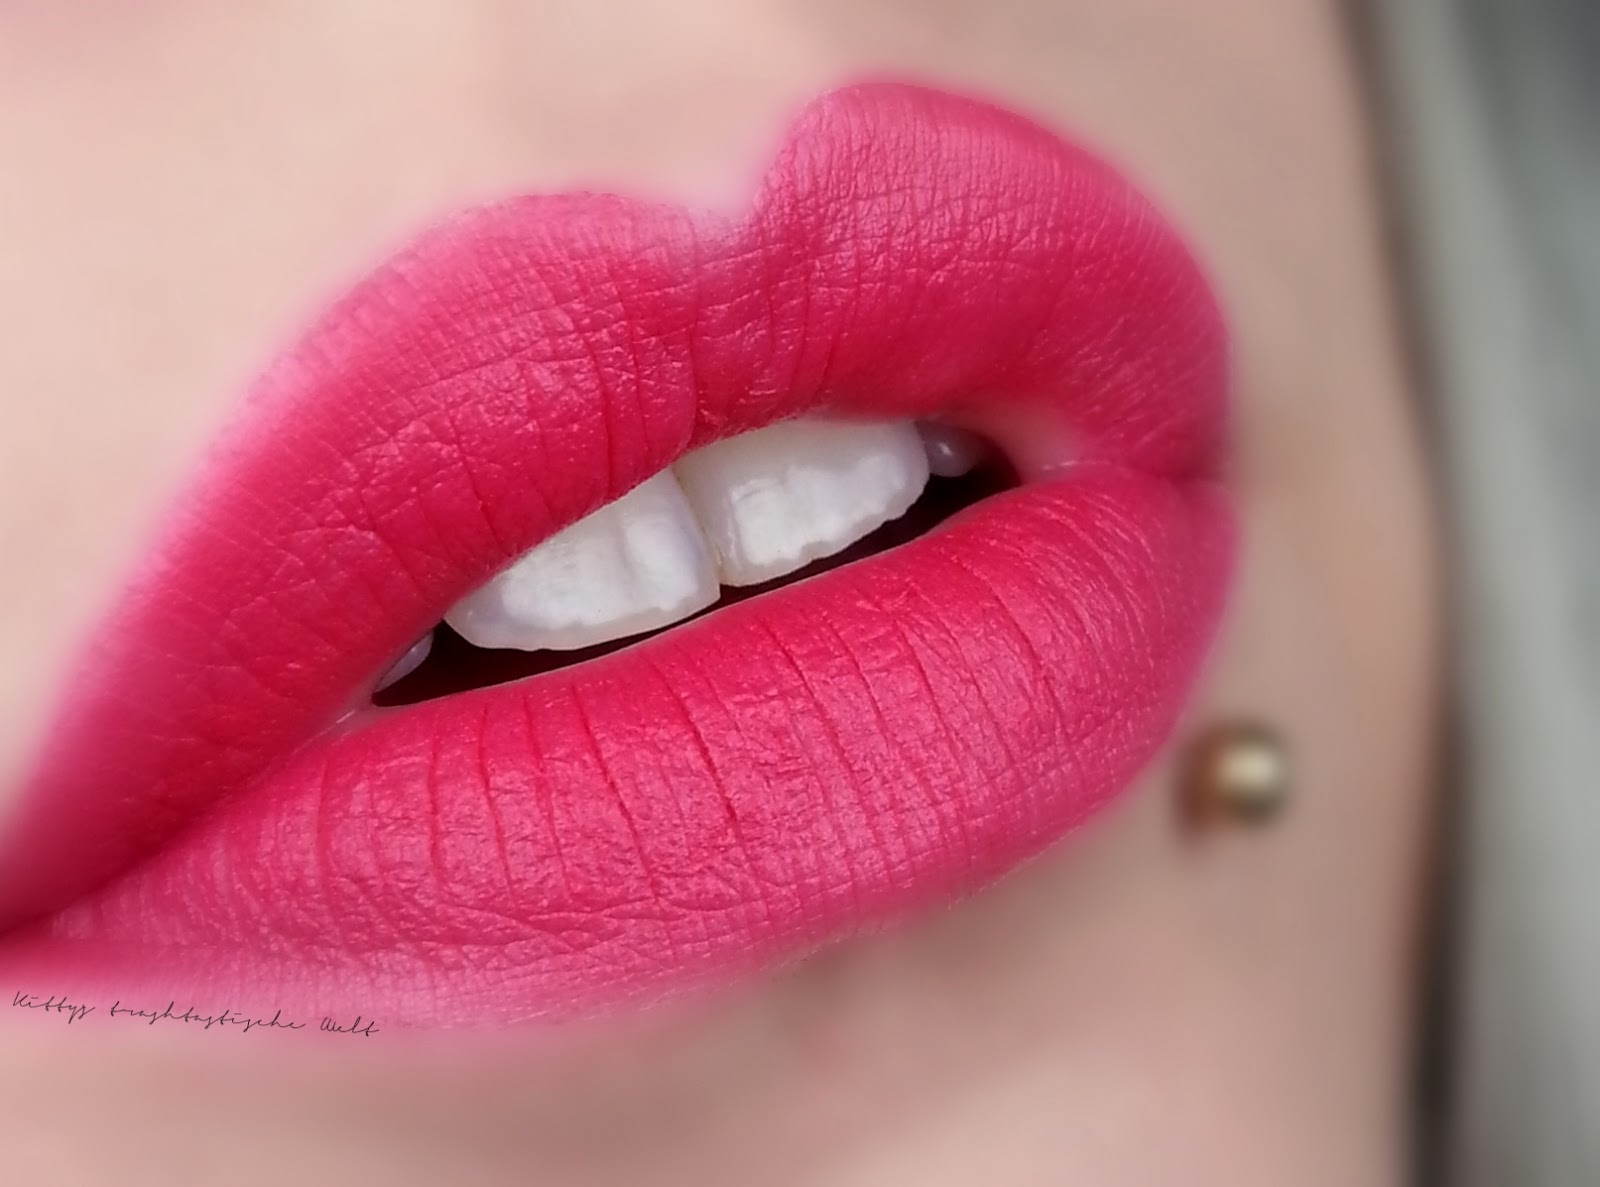 Son KIKO Velvet Passion Matte Lipstick 310 Strawberry Red